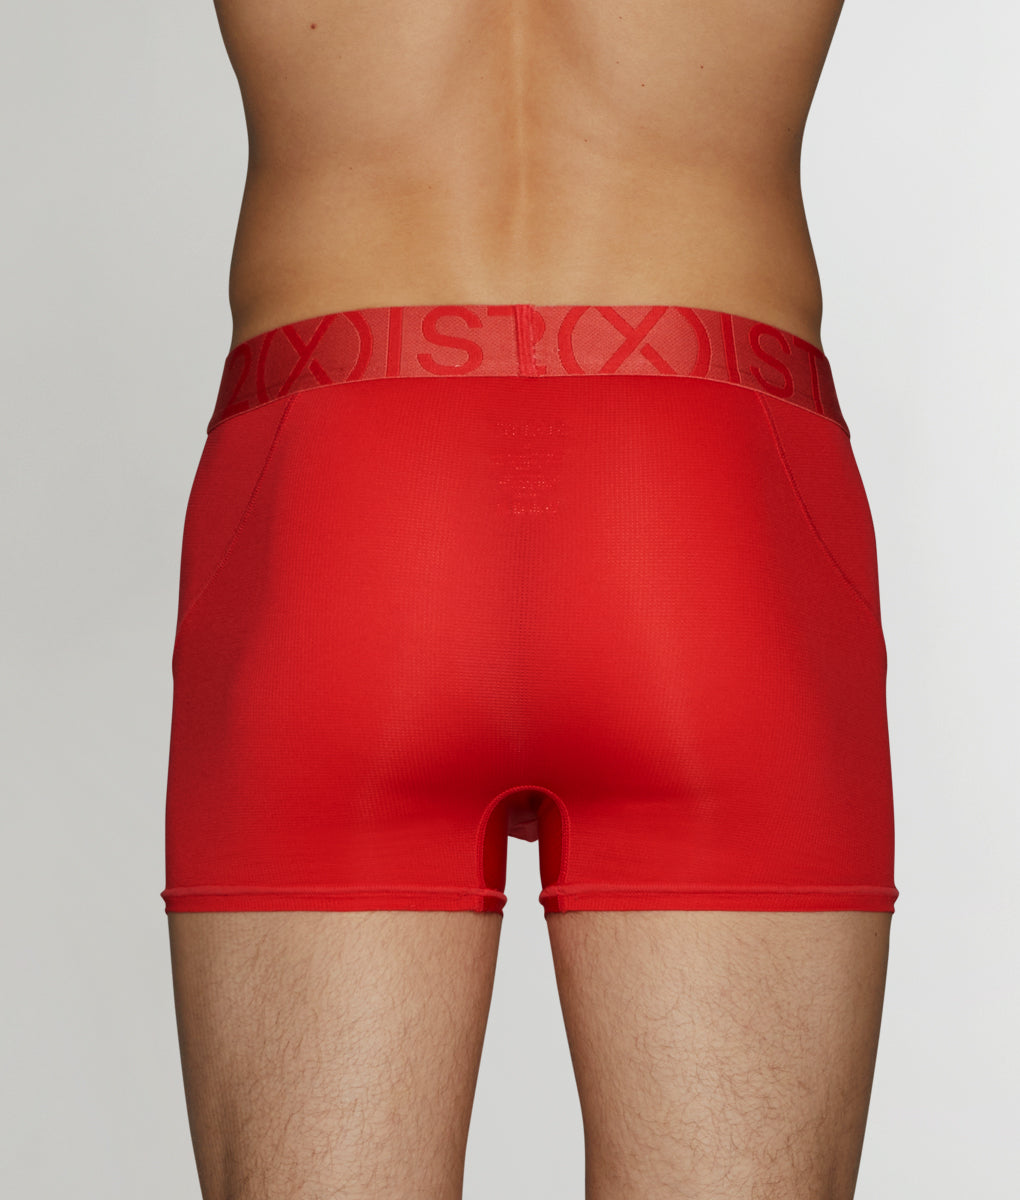 2(X)IST Speed Dri Trunk - Underwear Expert